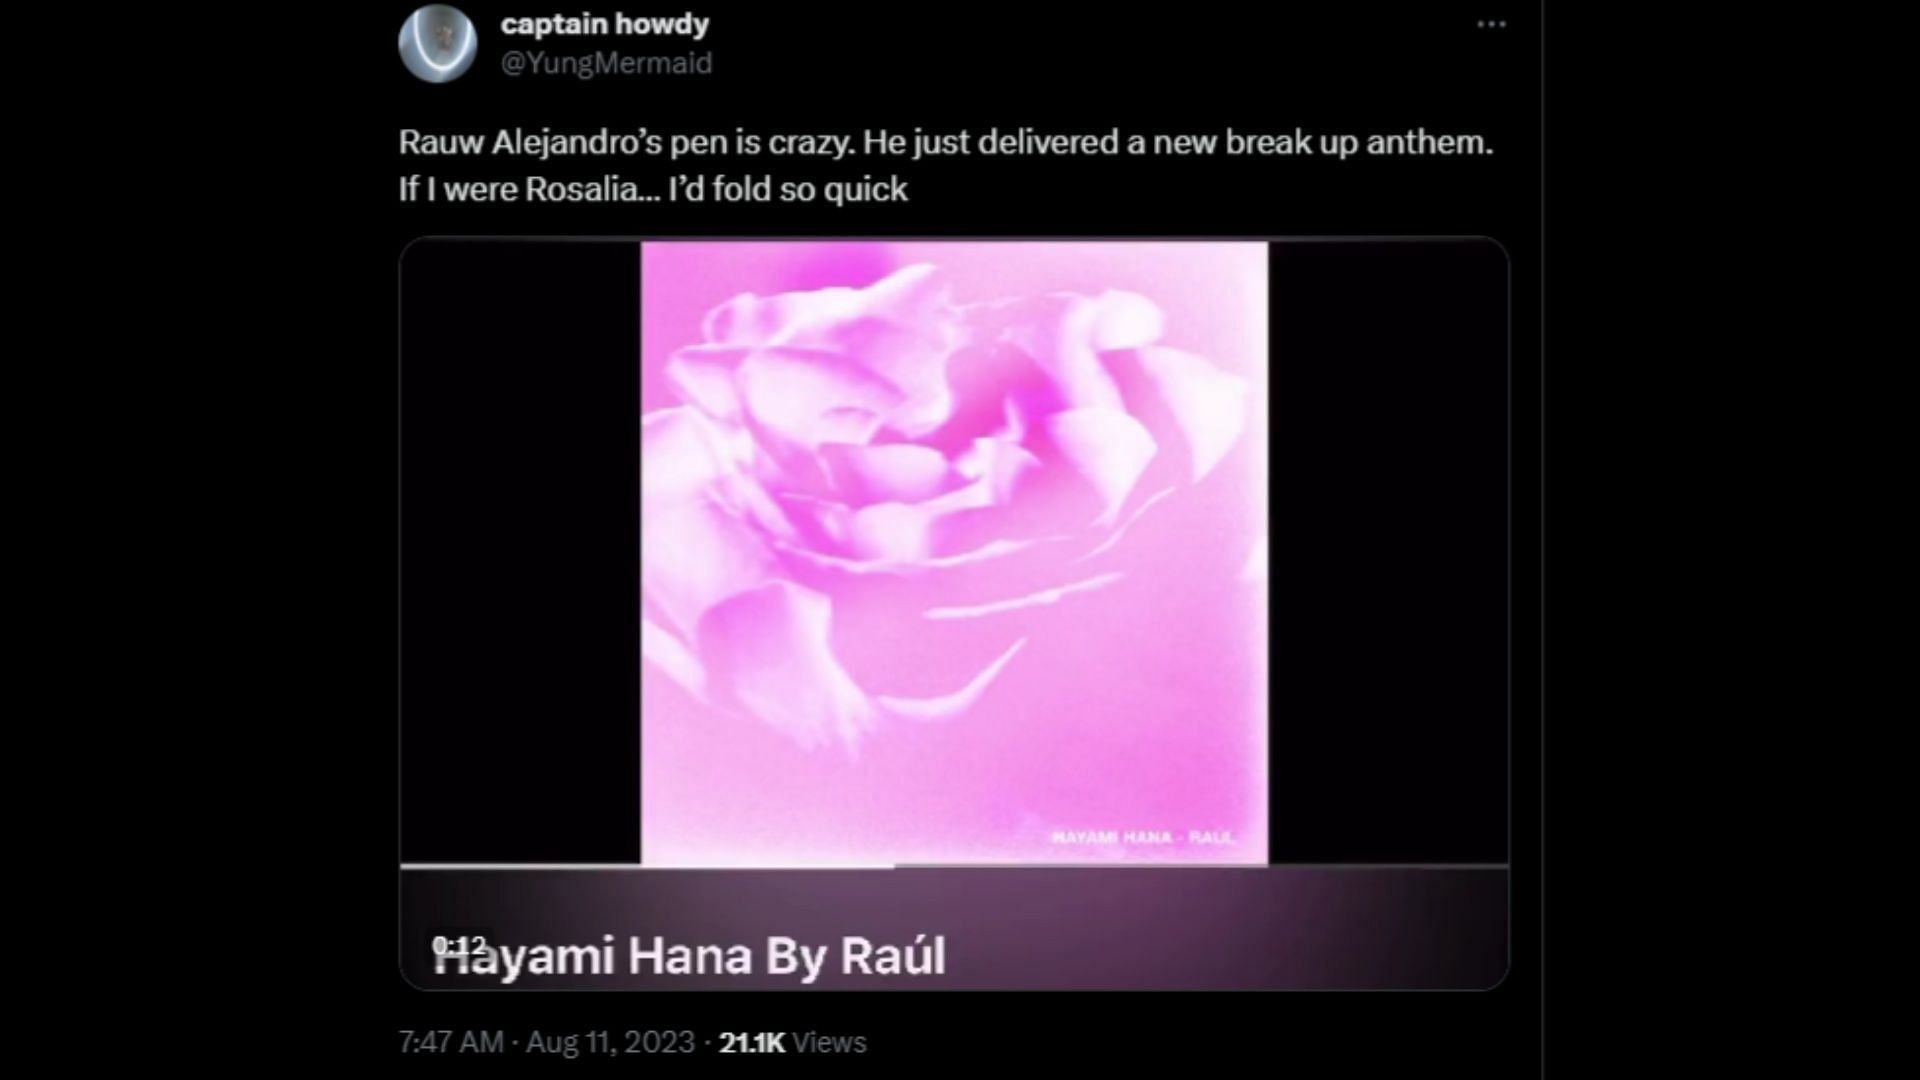 Rauw Alejandro Shares New Song “Hayami Hana”: Listen